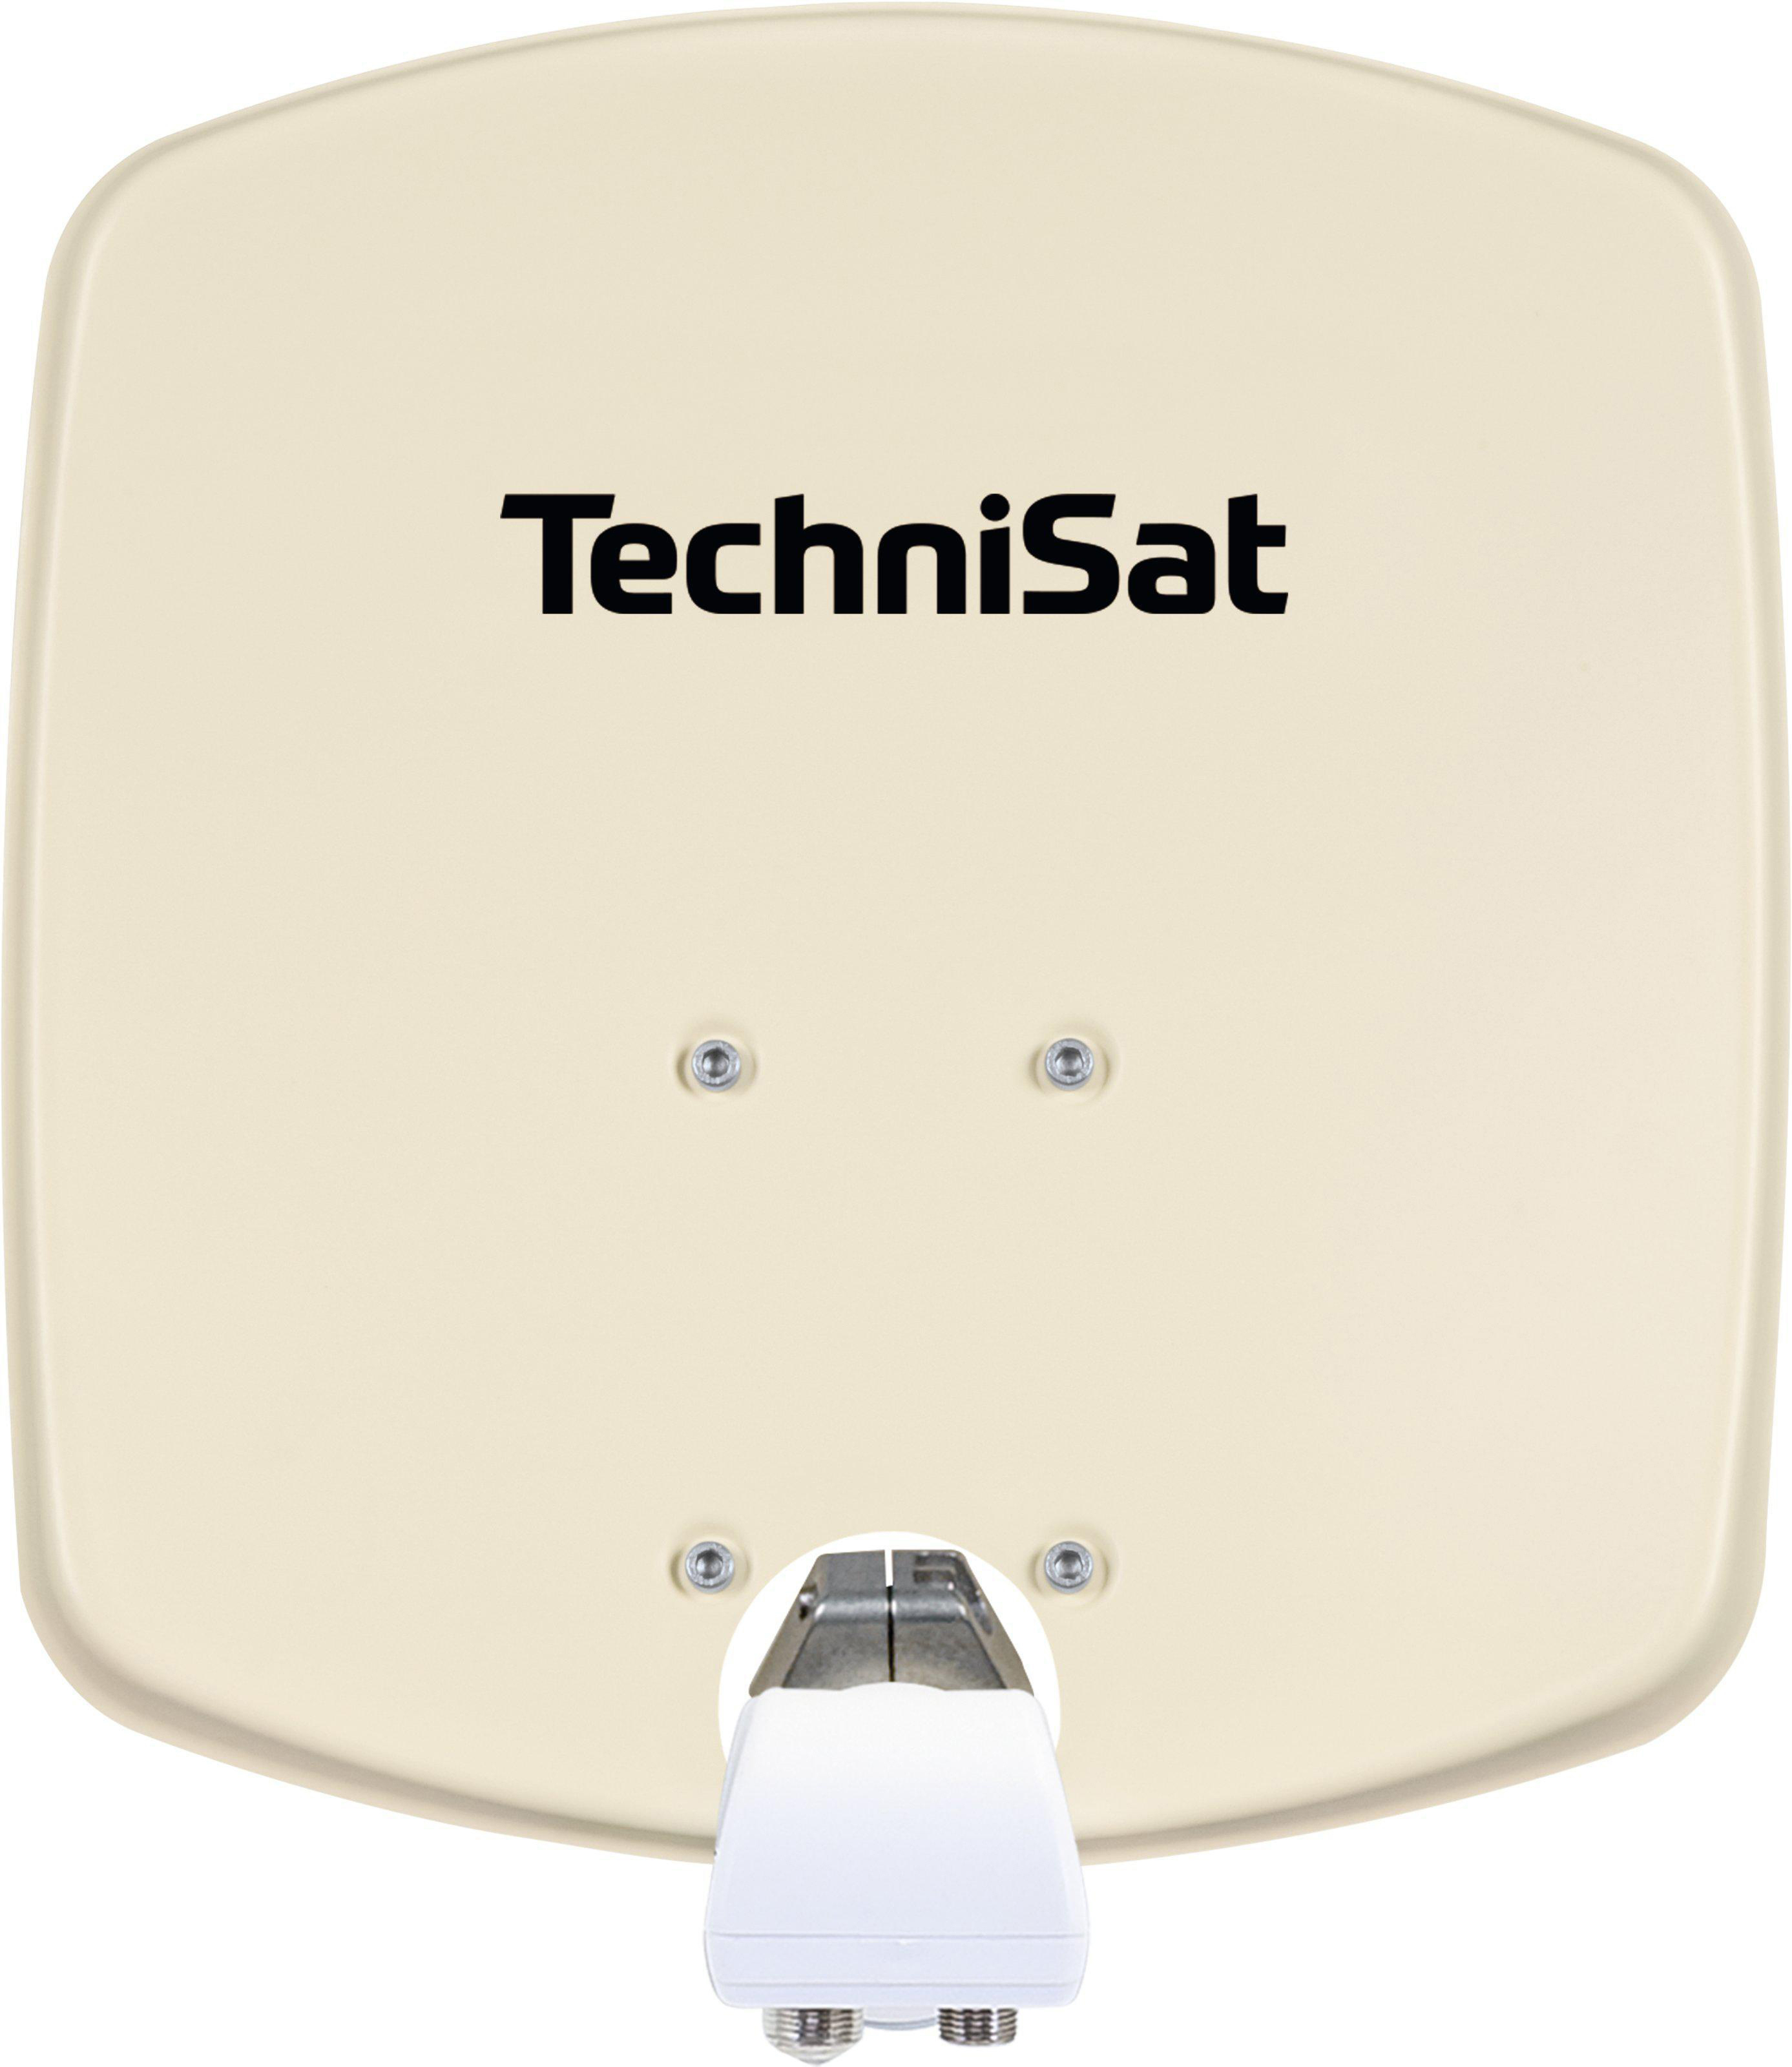 Uni 33 DigitalSat-Antenne + Digidish Twin TECHNISAT 1033/2882